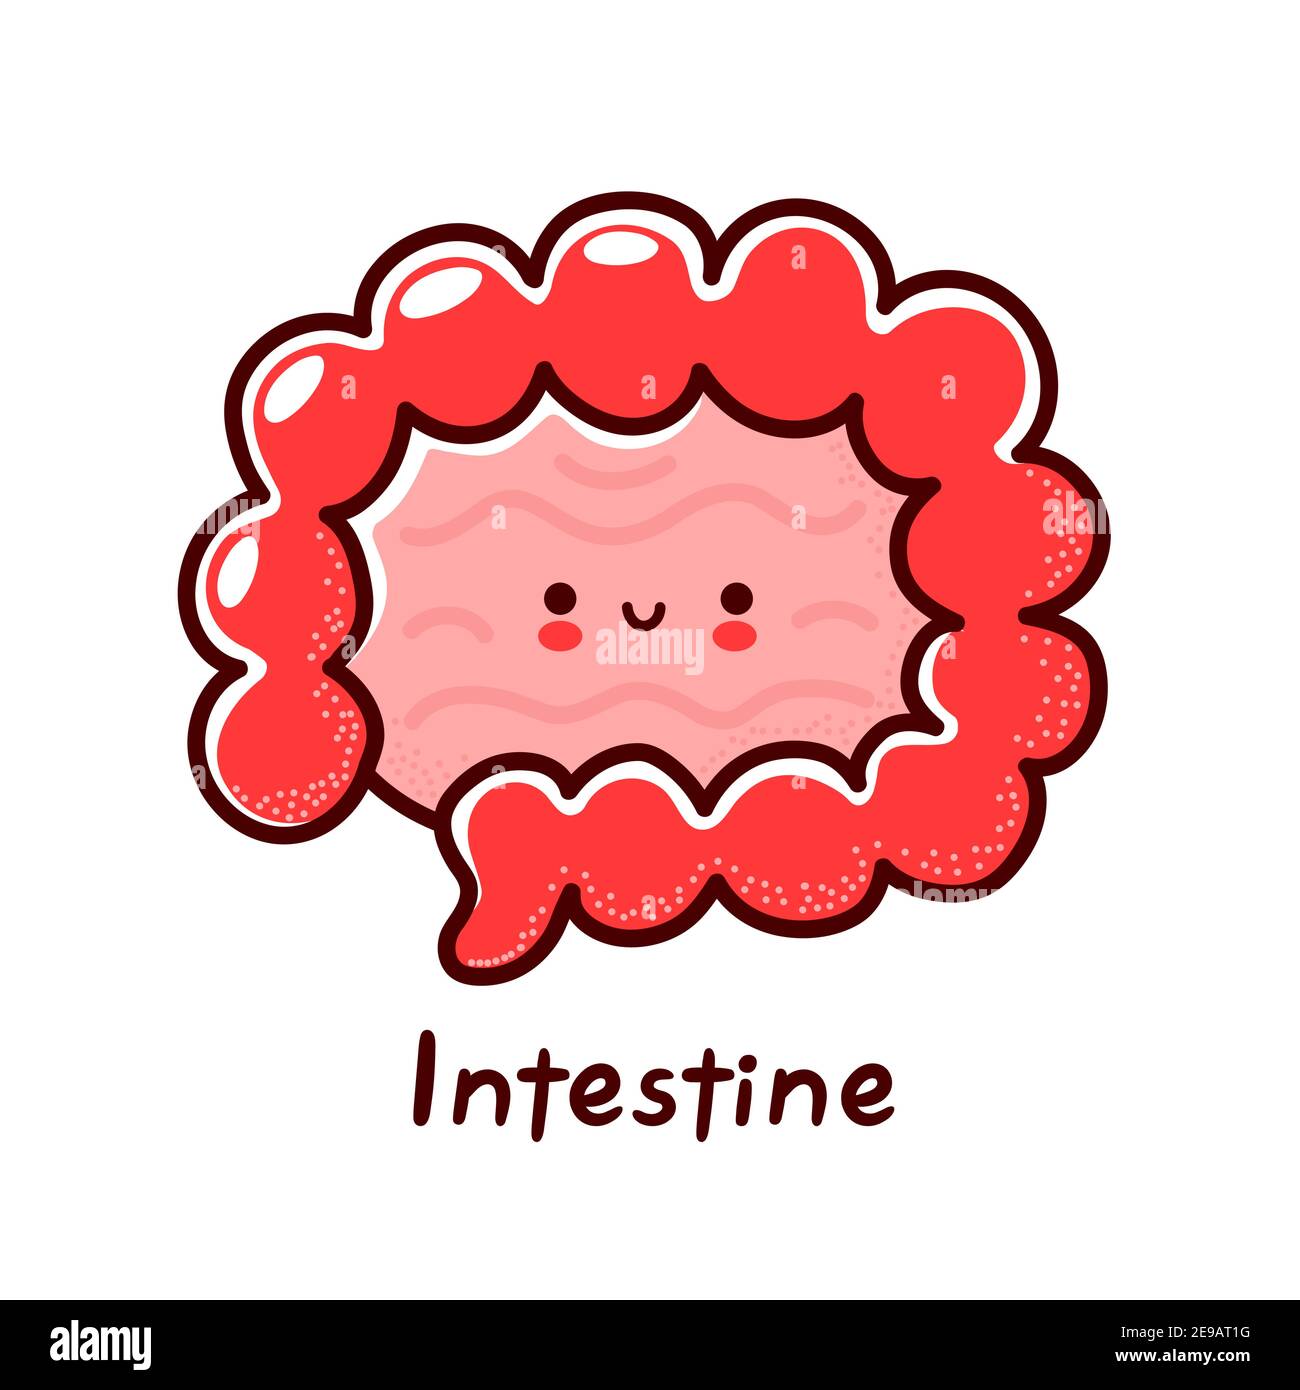 Carino divertente personaggio dell'organo dell'intestino umano. Icona di illustrazione del carattere kawaii della cartoon vettoriale a linea piatta. Isolato su sfondo bianco. Intestino con concetto di mascotte del carattere del viso Illustrazione Vettoriale